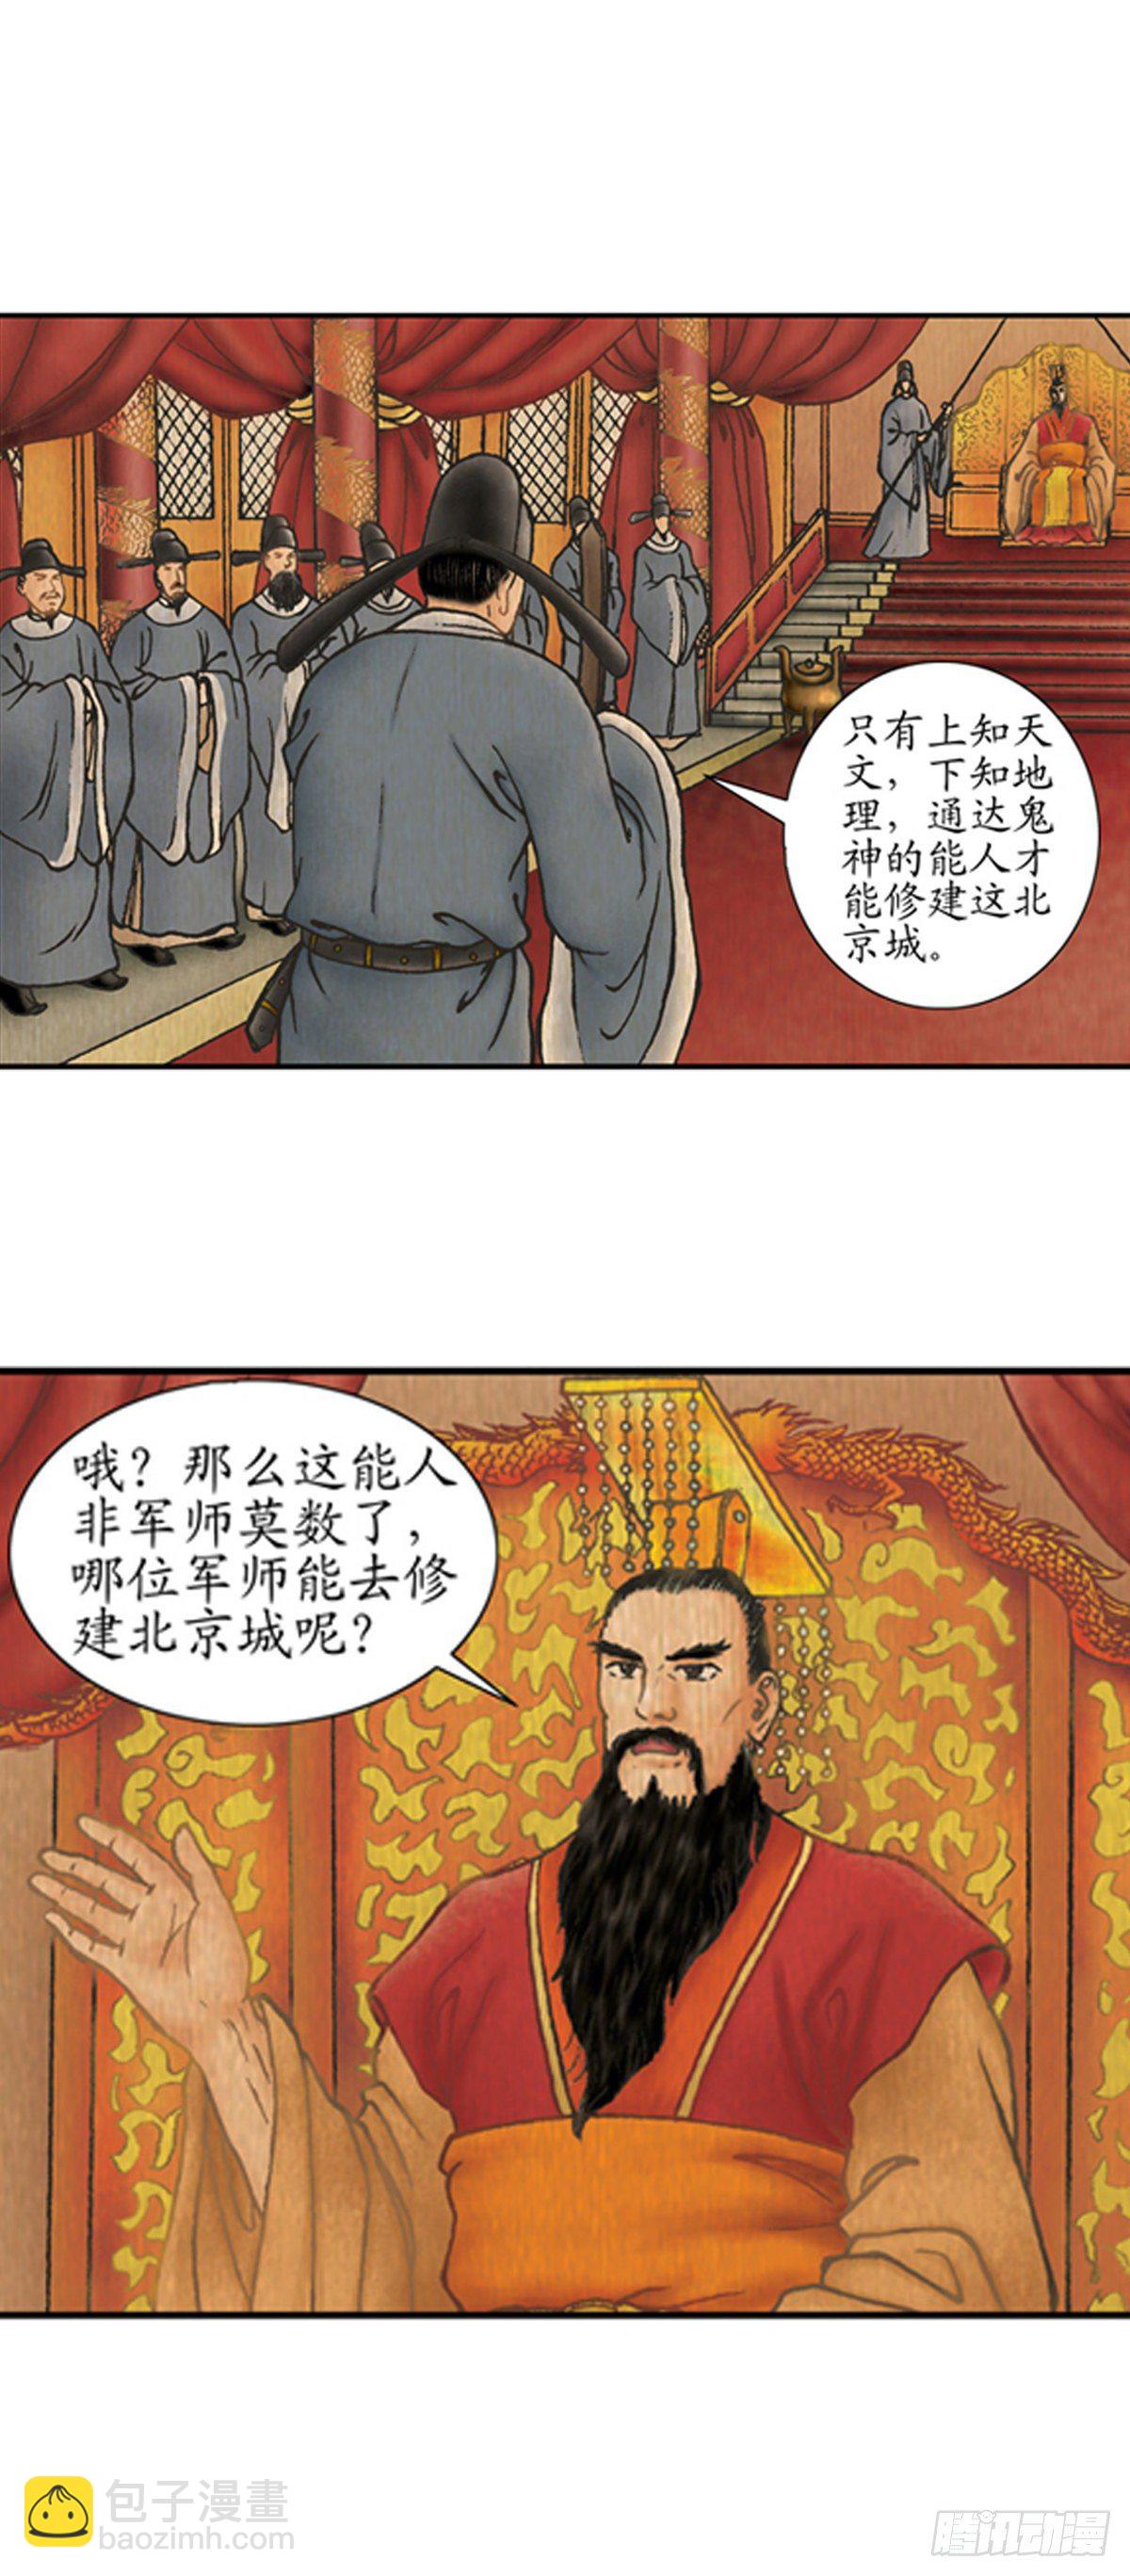 經典傳承—中國好故事 - 老北京的傳說 1 - 2